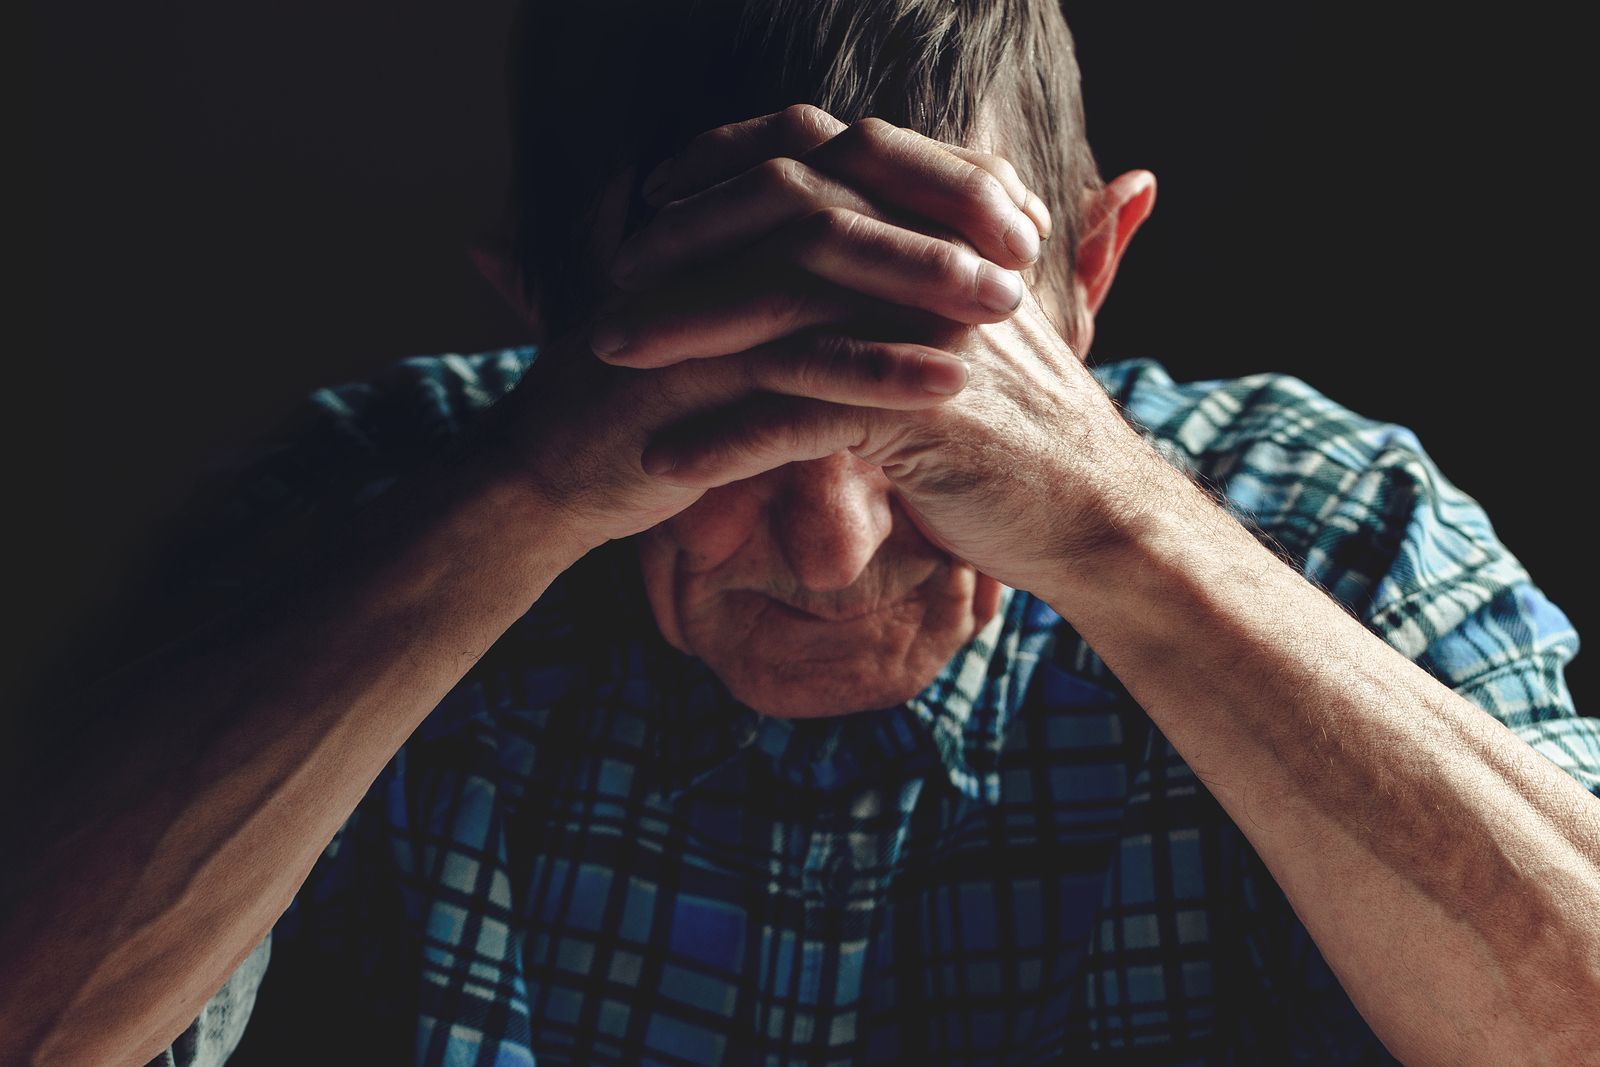 Un drama silenciado: los mayores de 80 años tienen la tasa de suicidio más alta de España